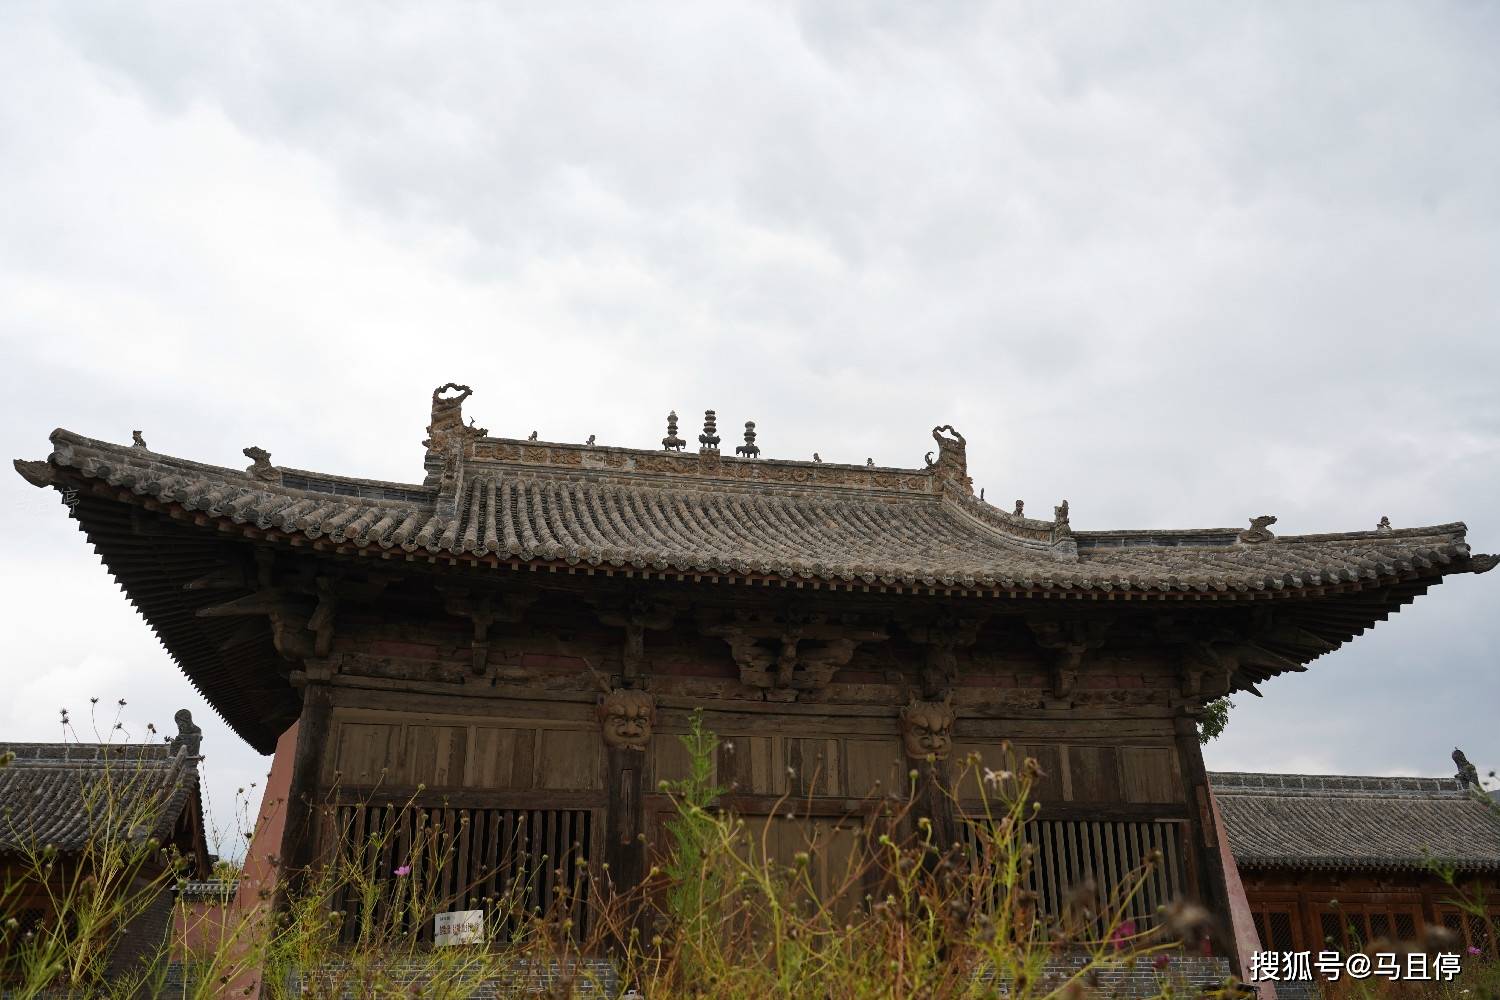 山西五台农村小寺庙,内有中国罕见的龙头柱,因金代大殿而成名